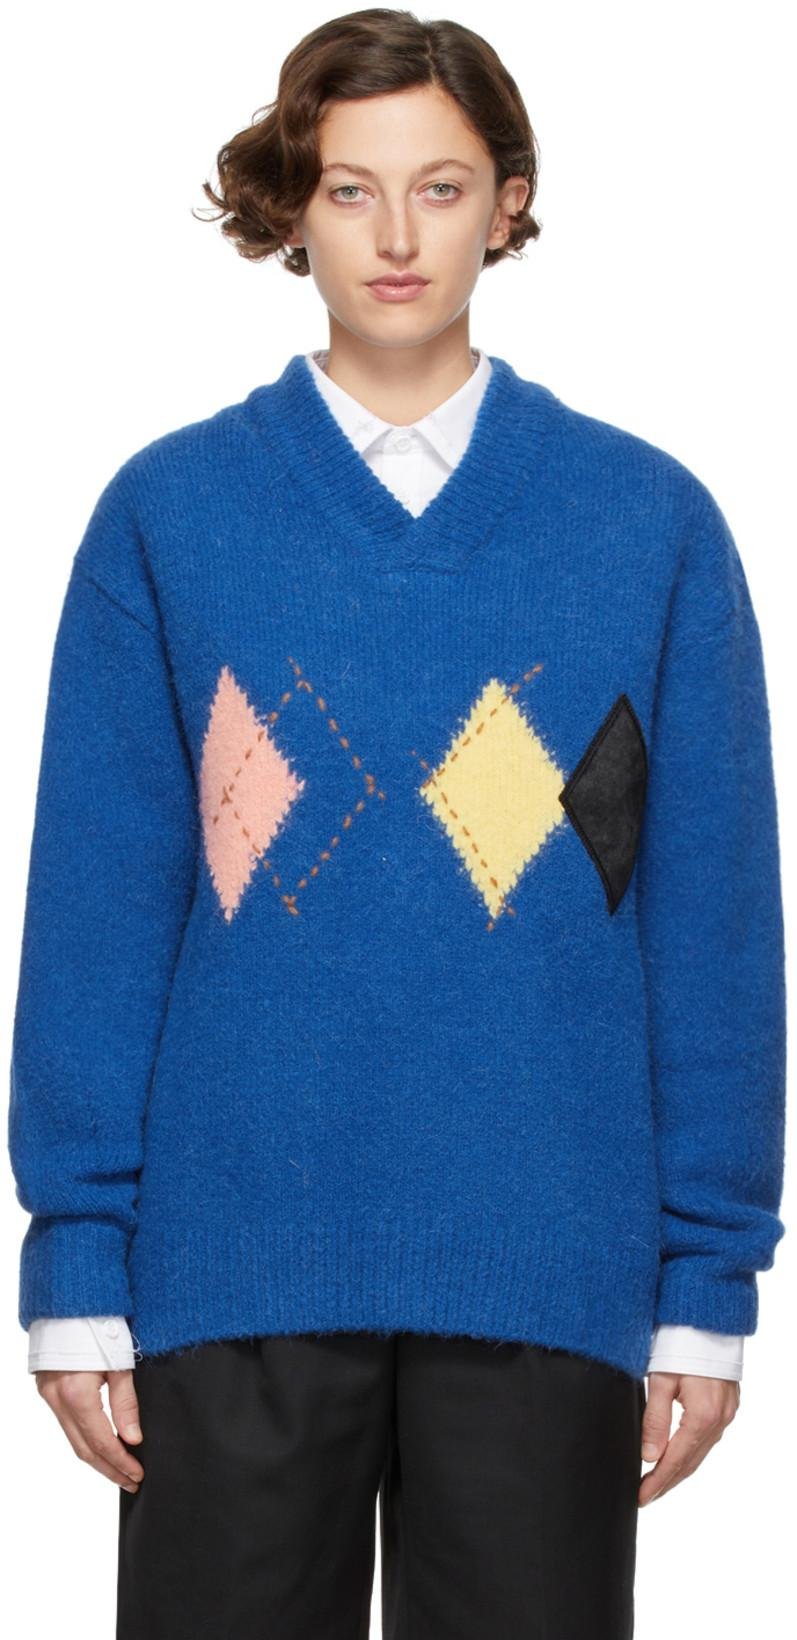 Blue Argyle Illand Sweater by ADER ERROR